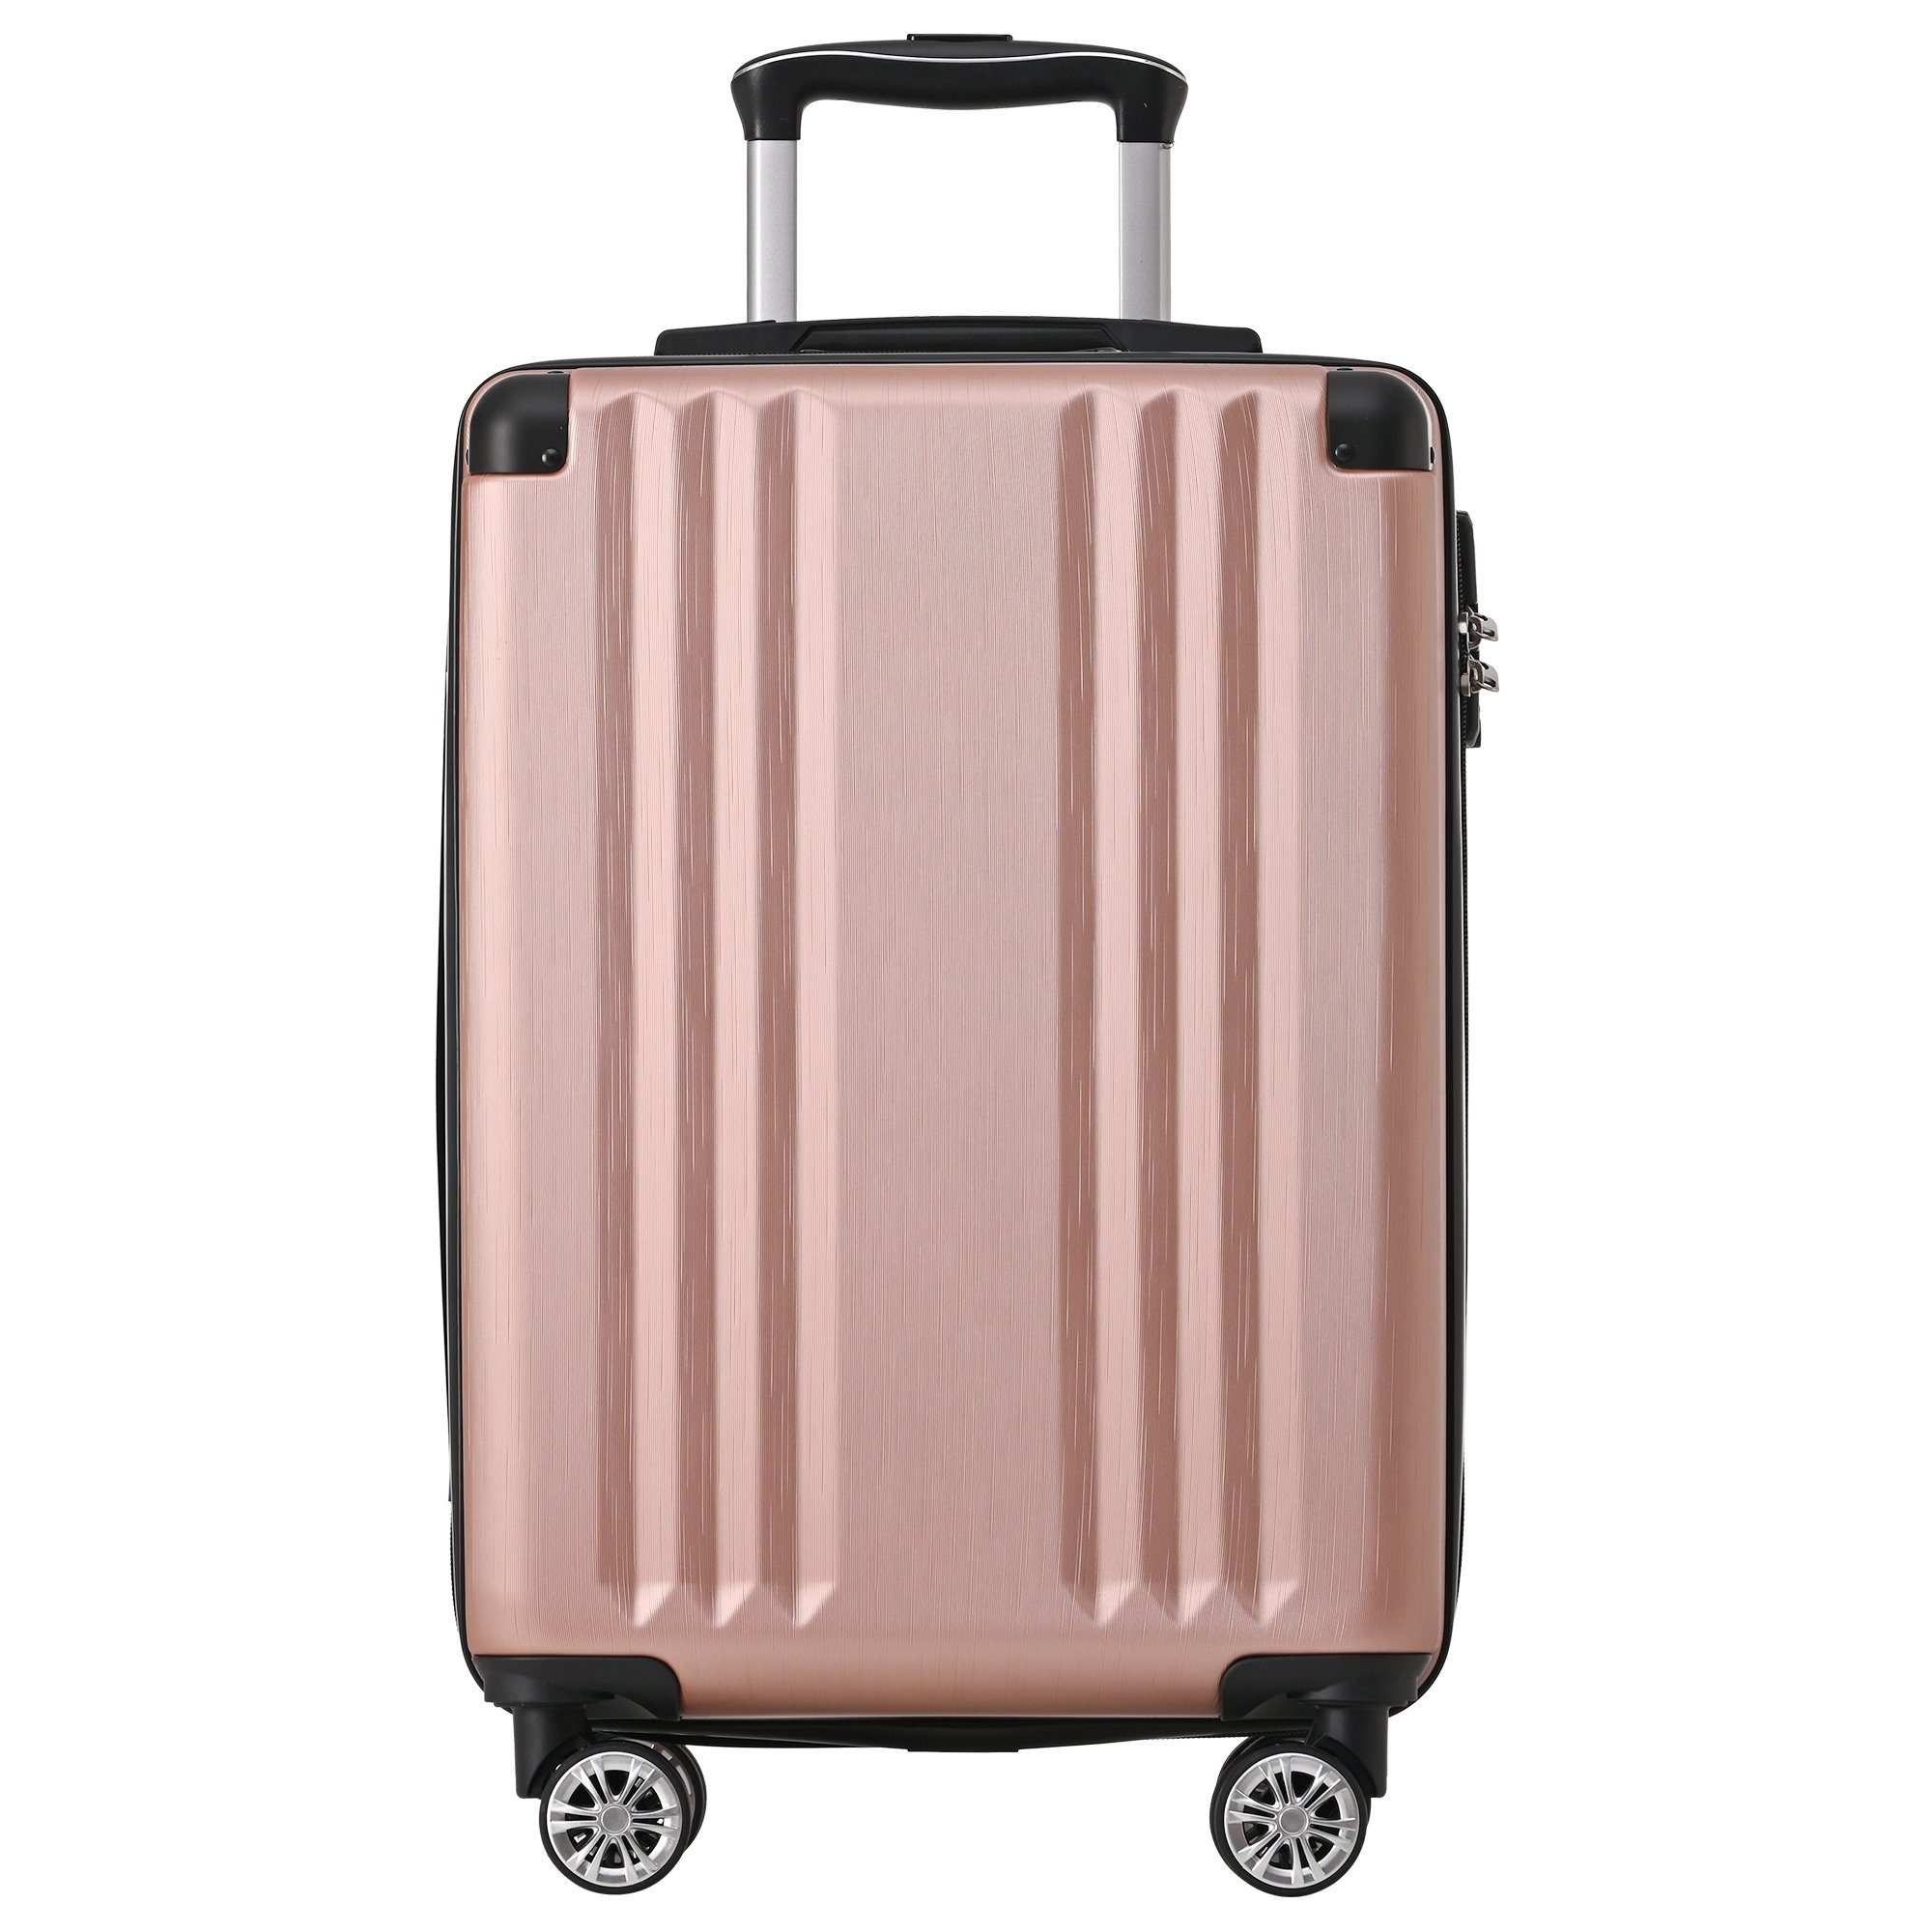 4 Zollschloss, ABS-Material, Ulife M-Größe:56.5*37.5*22.5 Rollen, Handgepäck-Trolley Reisekoffer Pink TSA